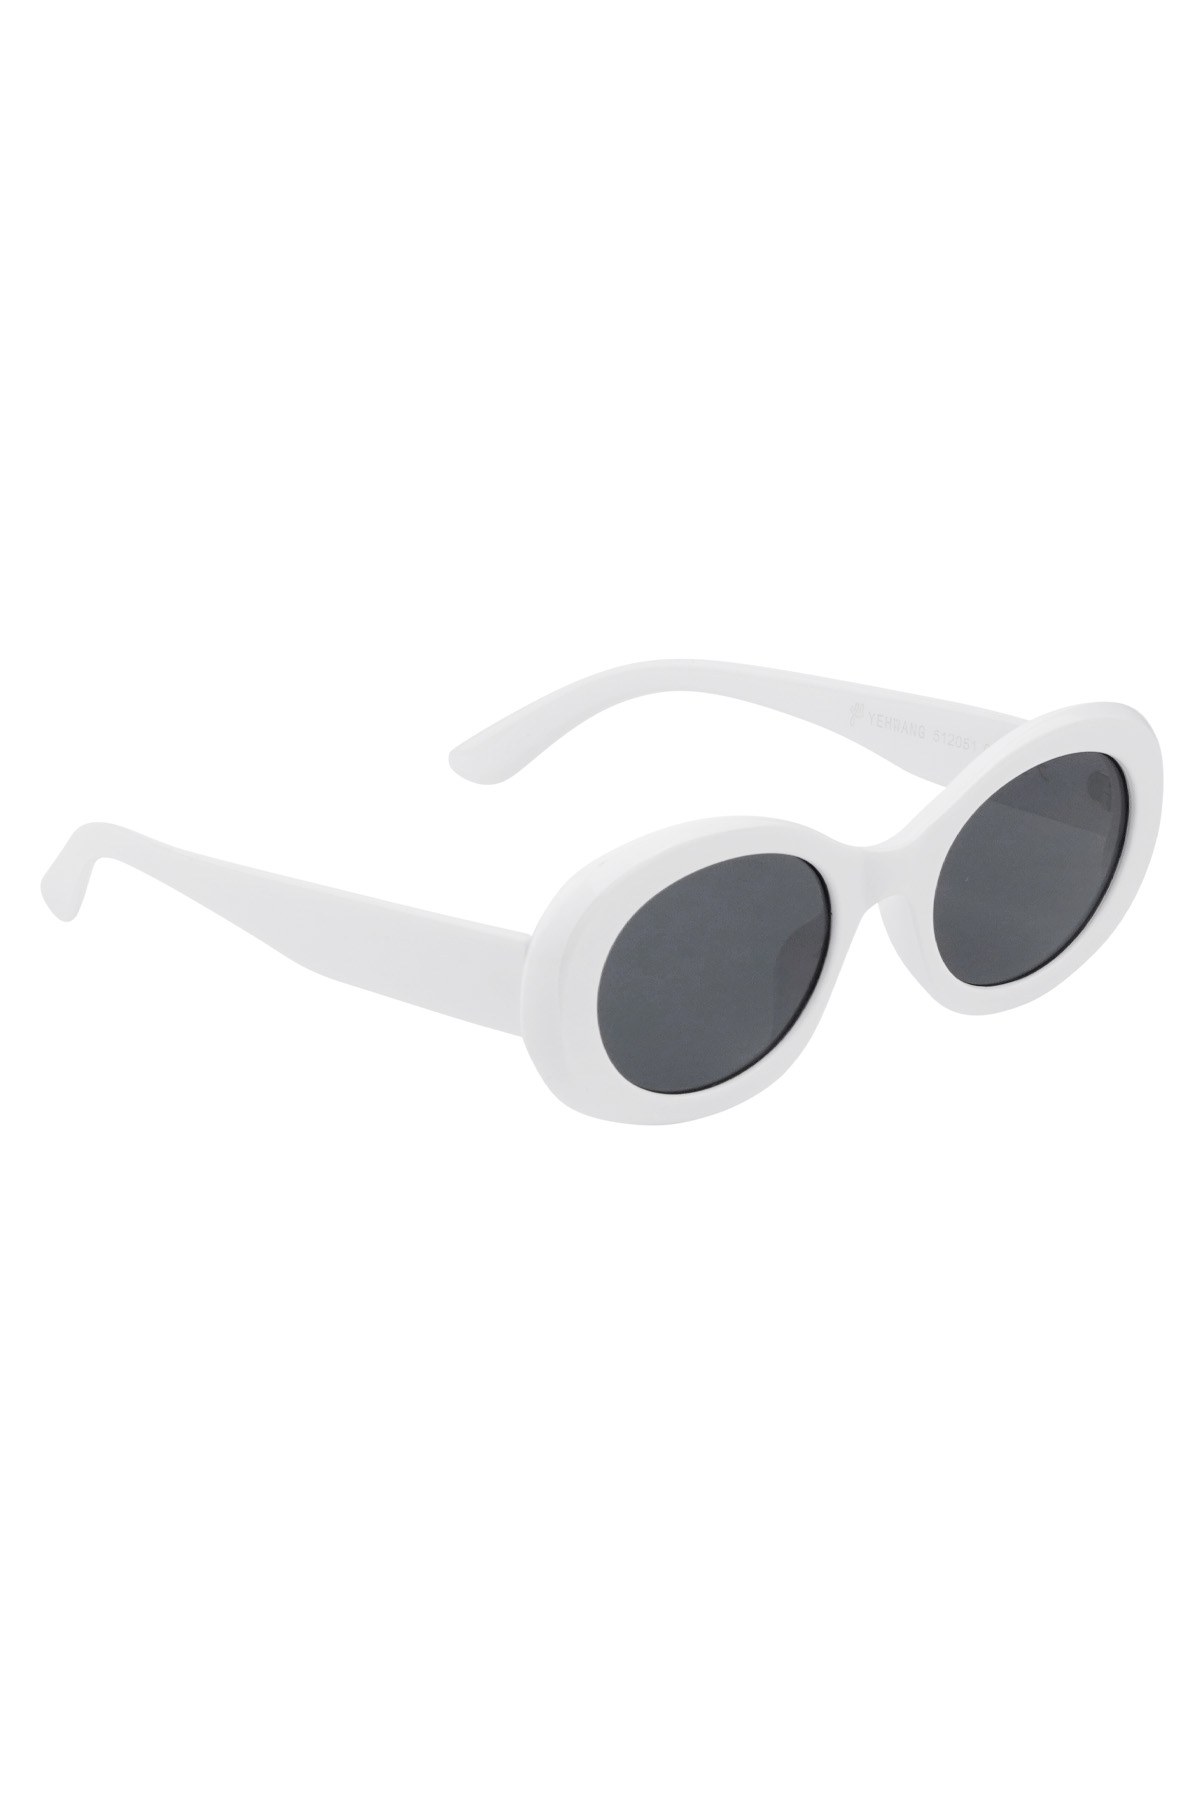 Gafas de sol con un aspecto elegante: blanco.